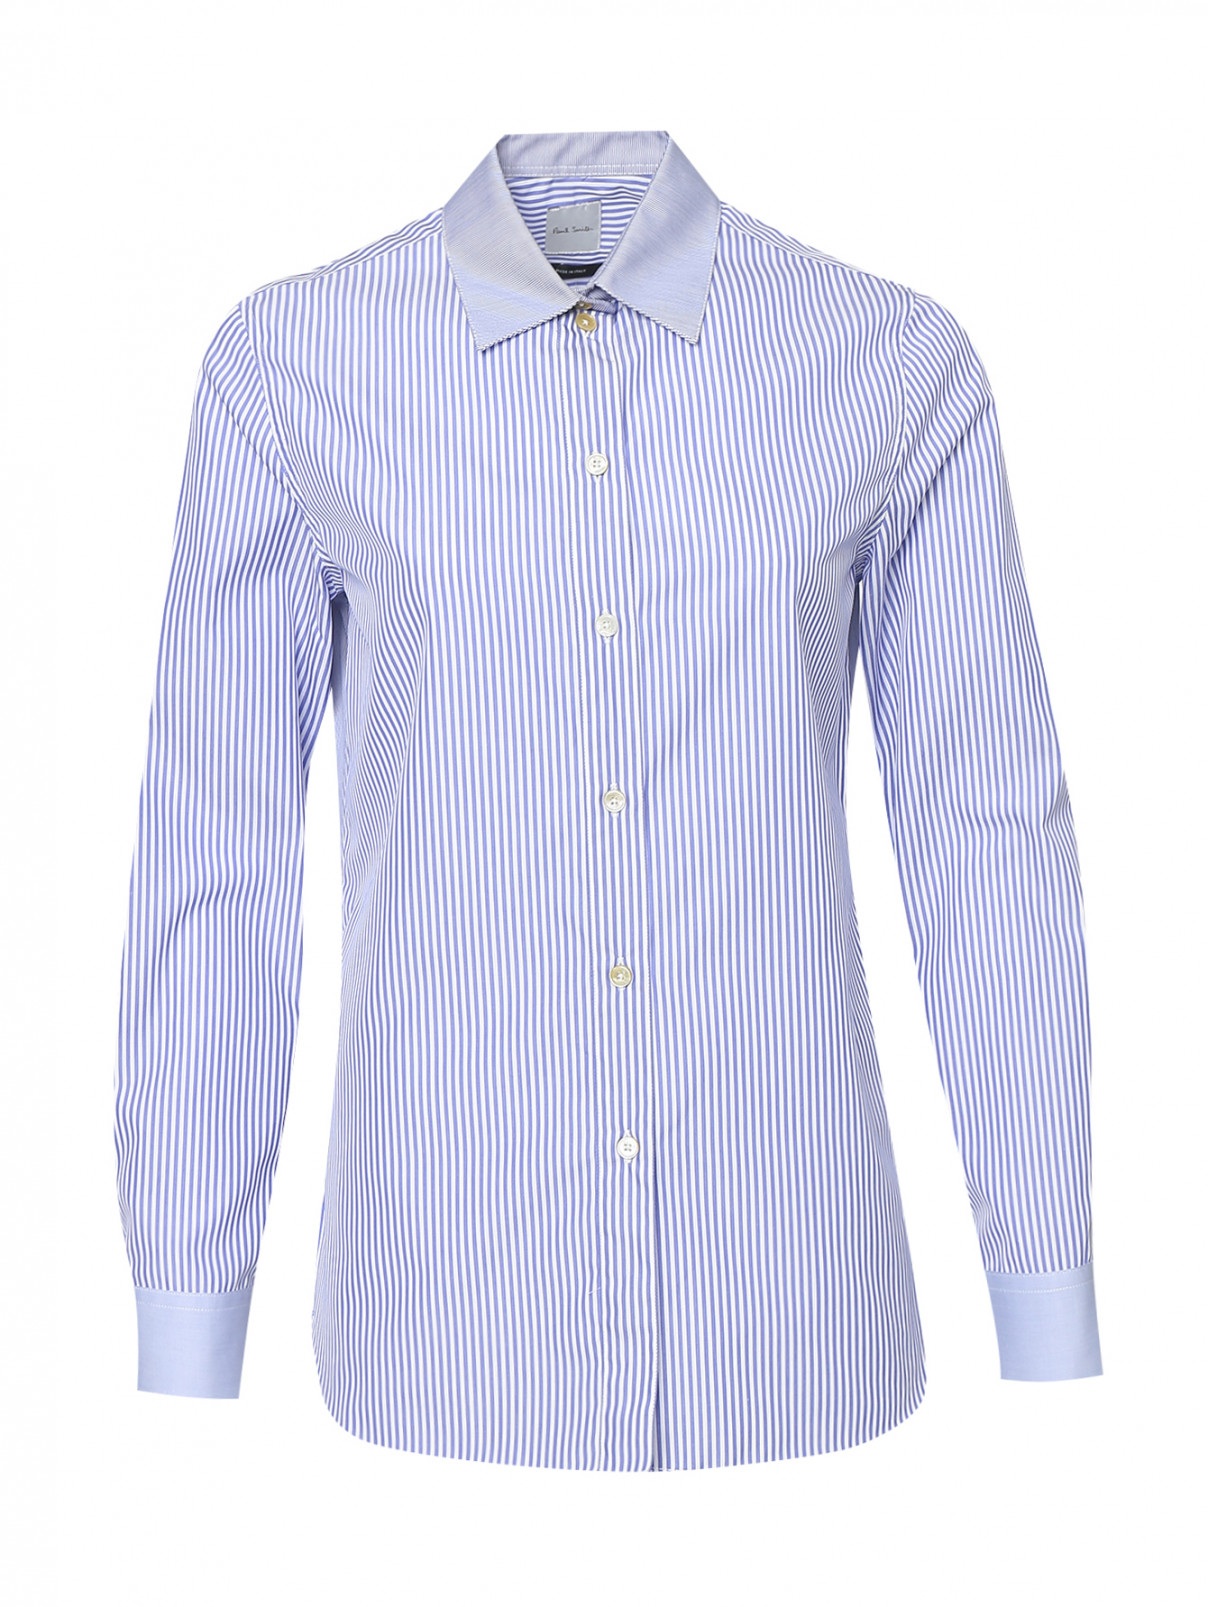 Рубашка из хлопка с узором полоска Paul Smith  –  Общий вид  – Цвет:  Узор